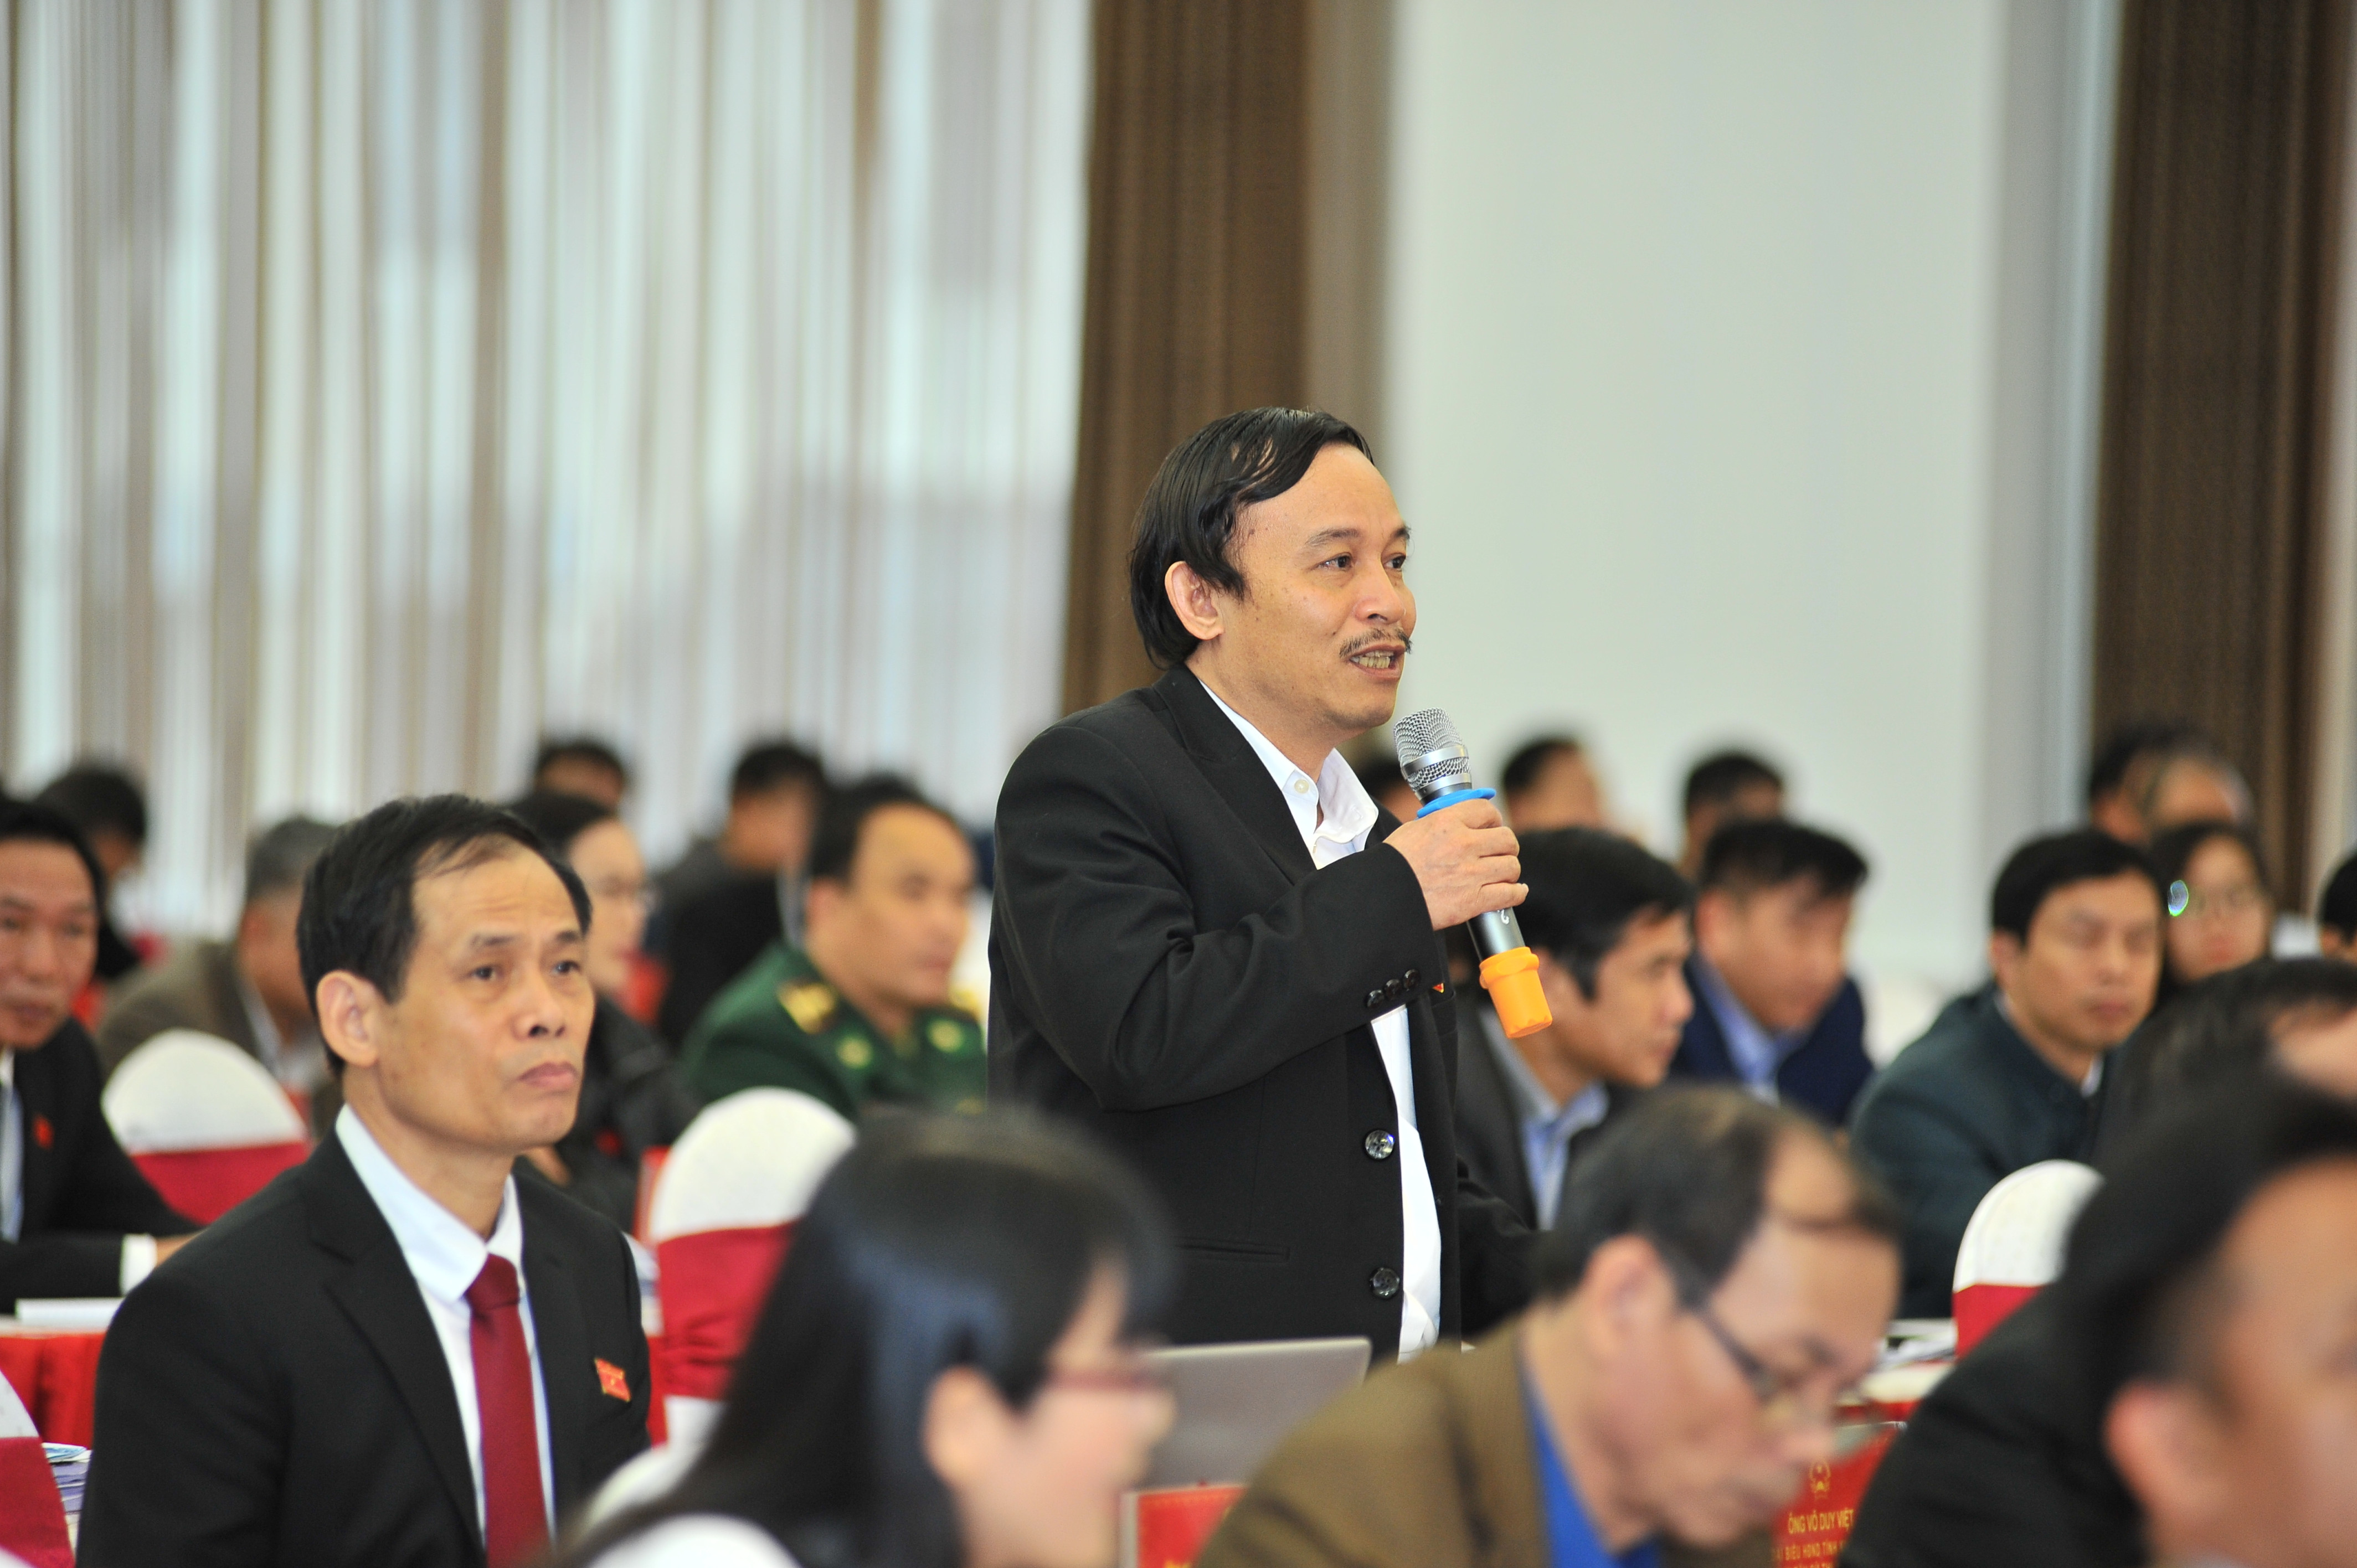 Giám đốc Sở Tài nguyên - Môi trường Võ Duy Việt trả lời ý kiến chất vấn của đại biểu về cấp đất định giá cho người có công. Ảnh: Thành Cường